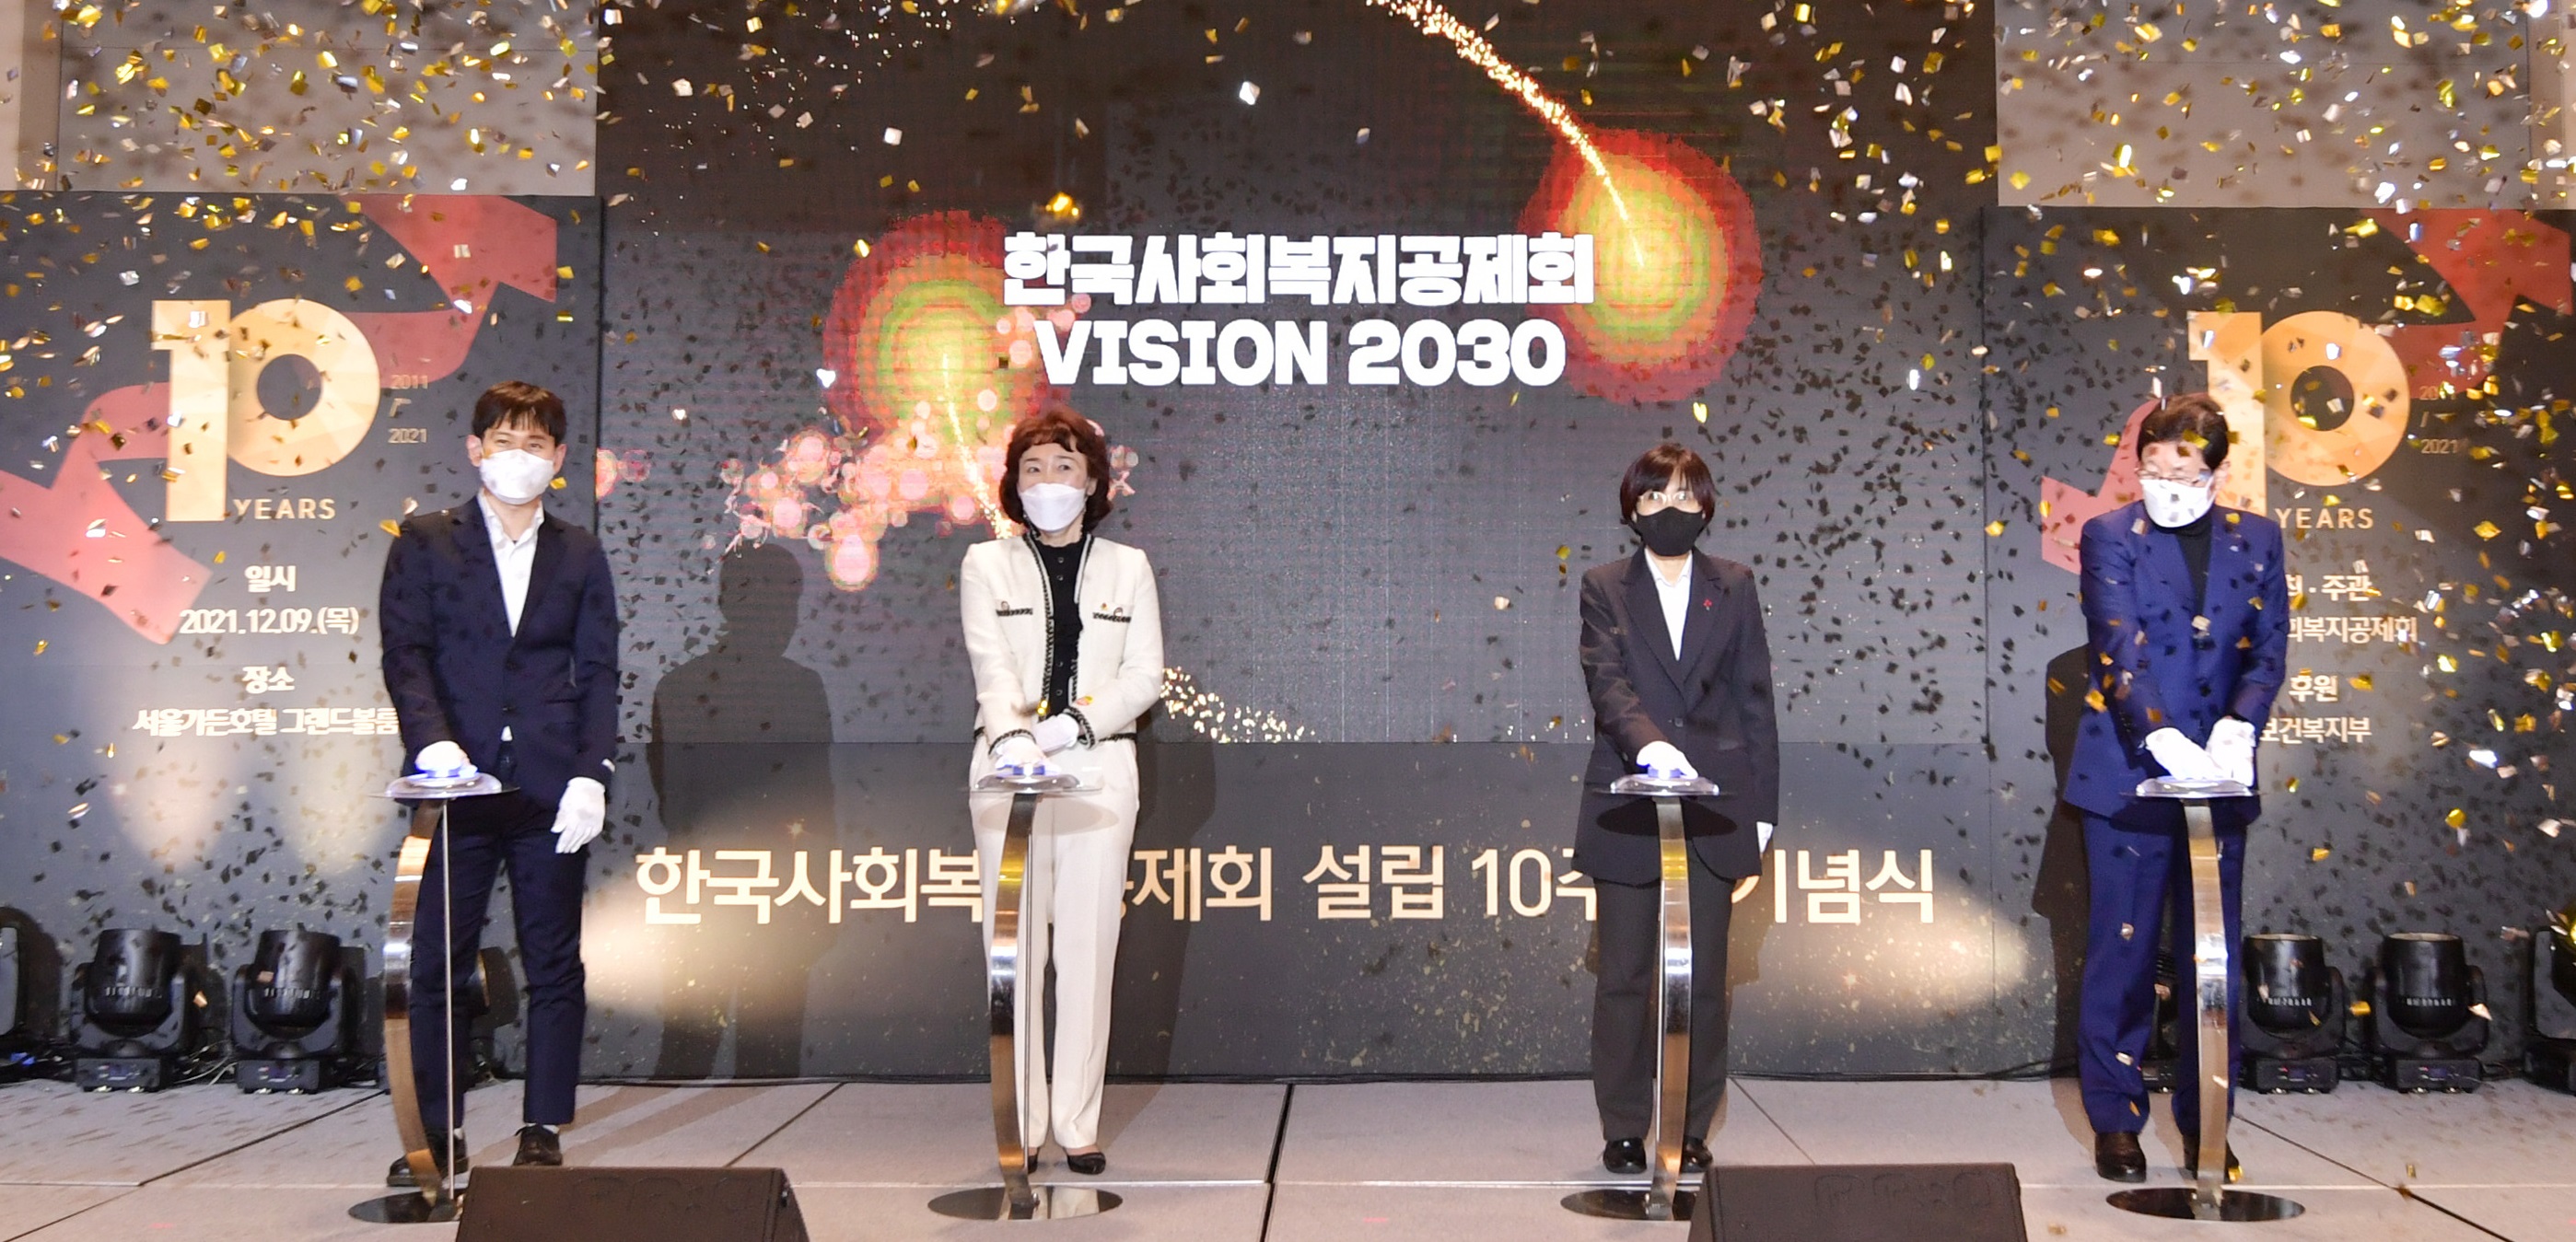 지난 9일 마포구 서울가든호텔에서 열린 한국사회복지공제회 10주년 기념식에서 강선경(왼쪽 두번째) 이사장이 비전 2030을 선포하고 있다. 한국사회복지공제회 제공